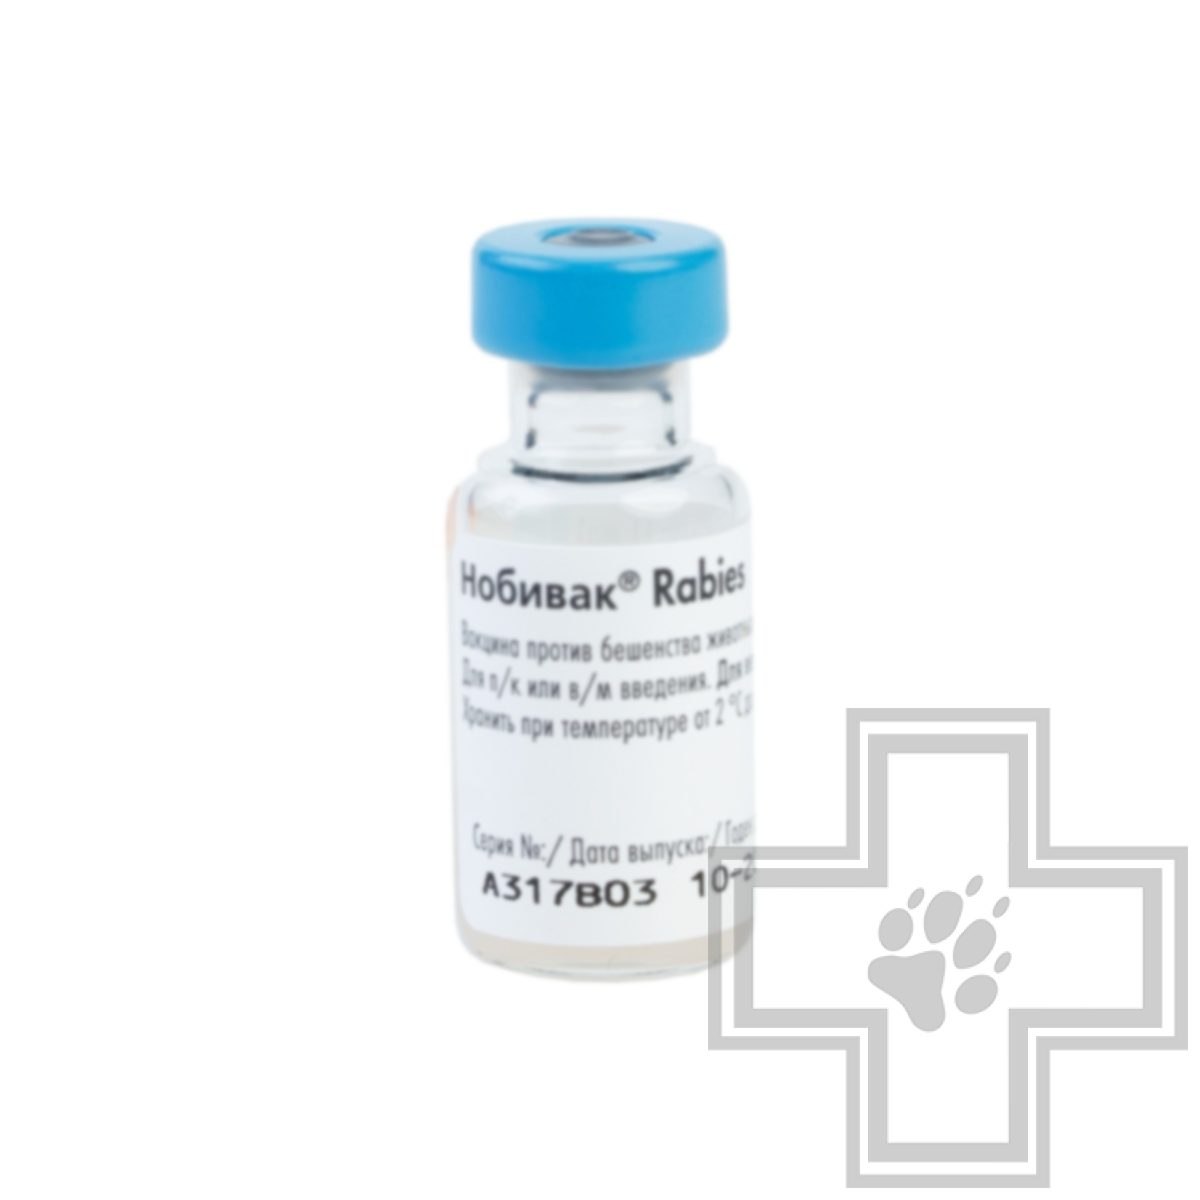 Вакцина rabies